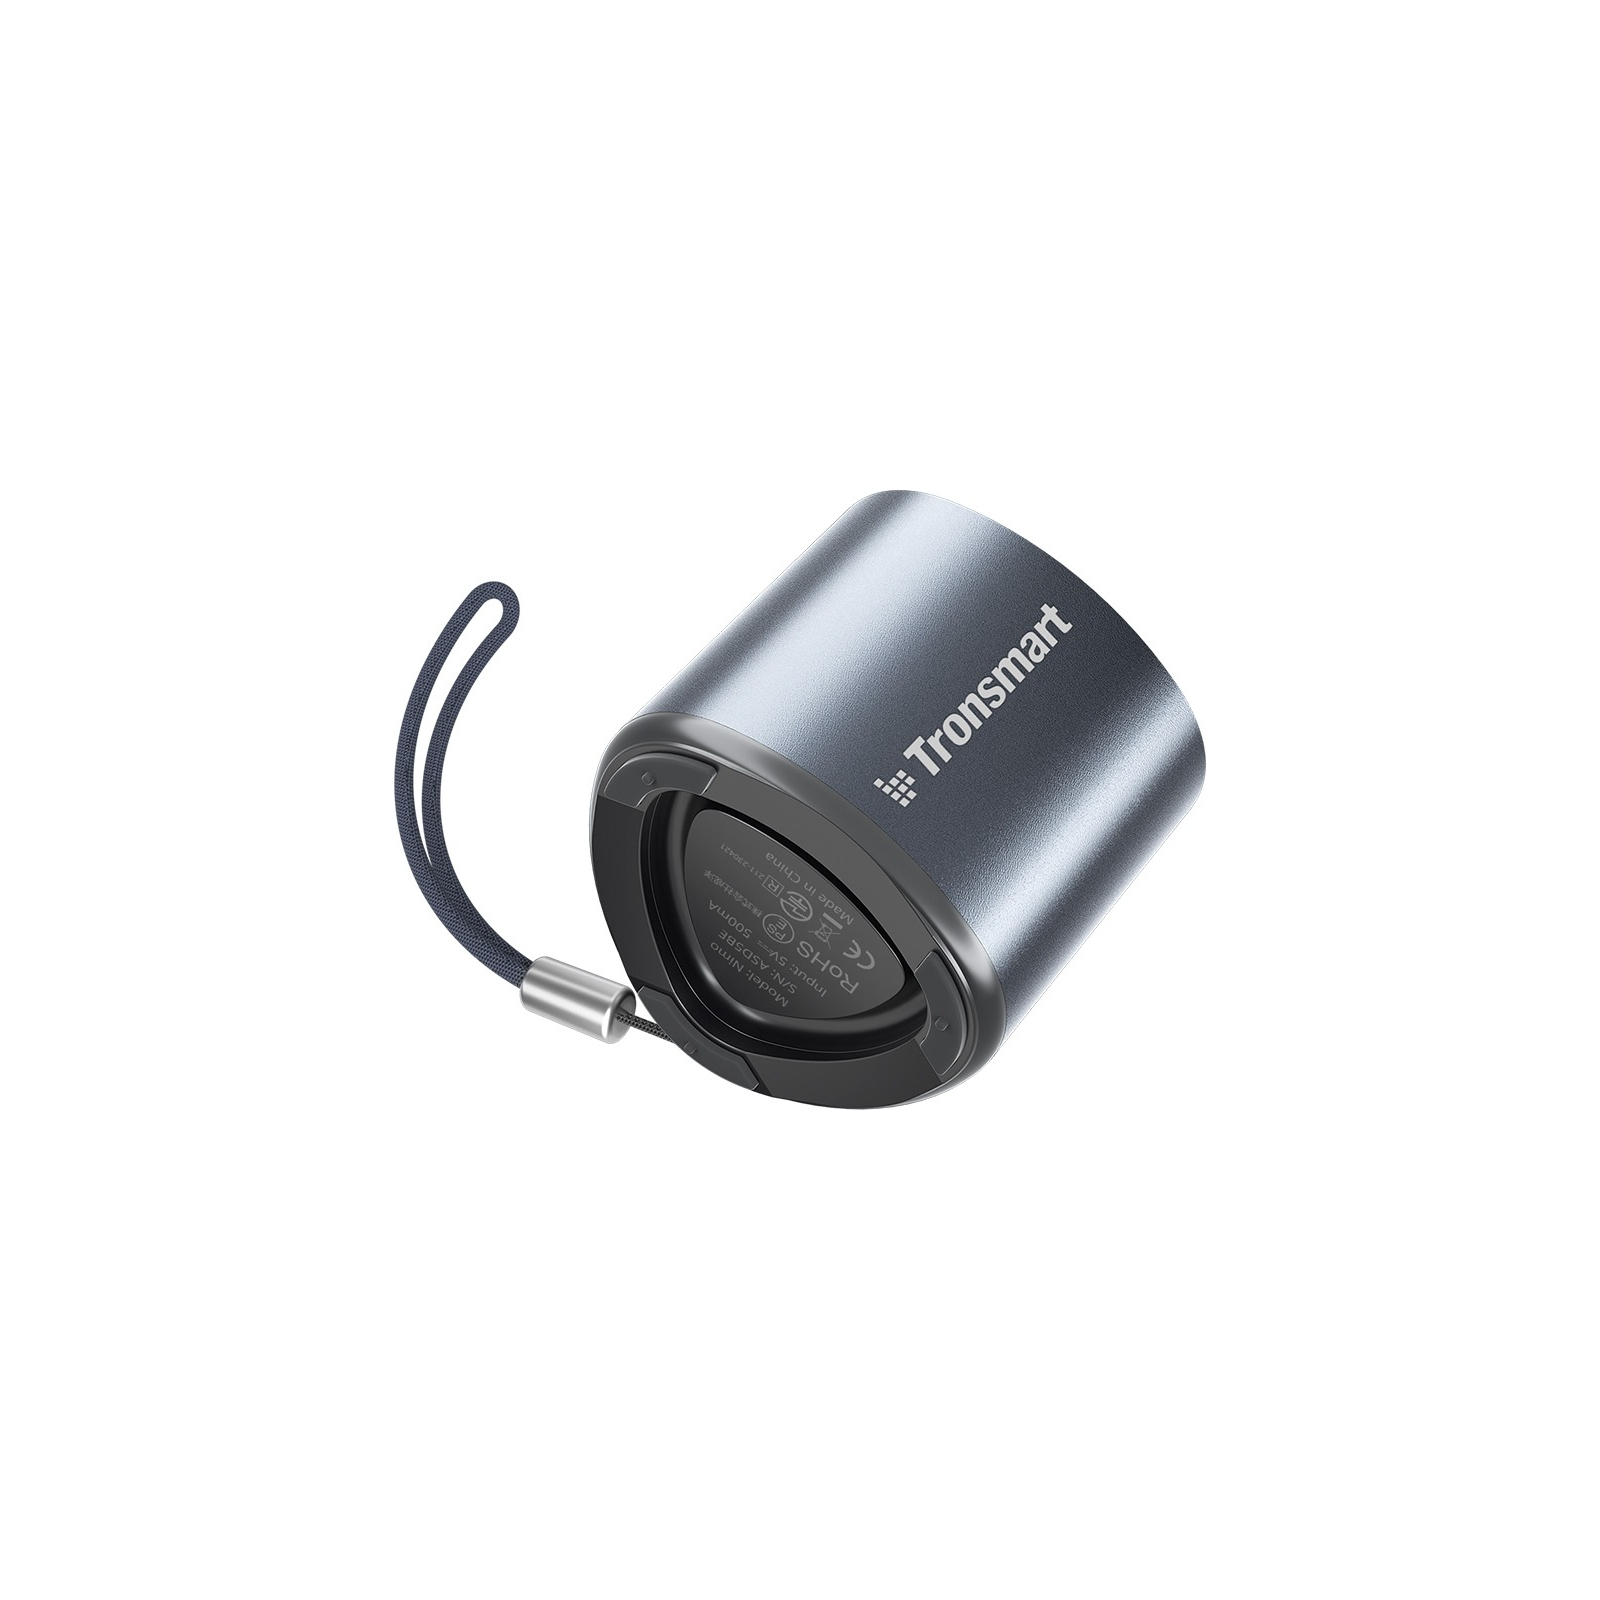 Акустична система Tronsmart Nimo Mini Speaker Gold (985908) зображення 3